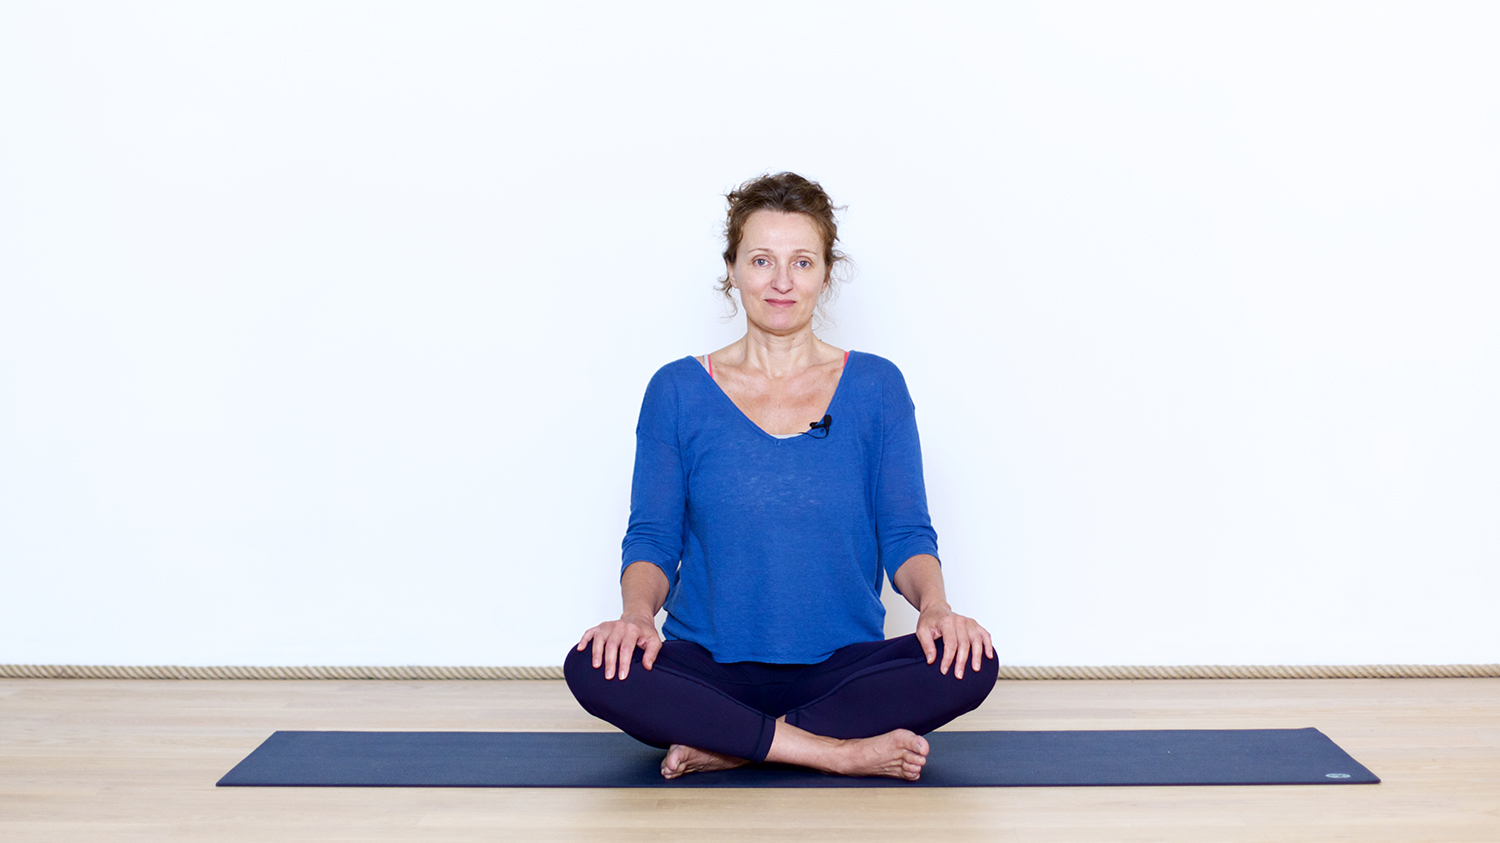 Suite au Parcours d'Introduction au Yoga doux | Cours de yoga en ligne avec Delphine Denis | Présentations